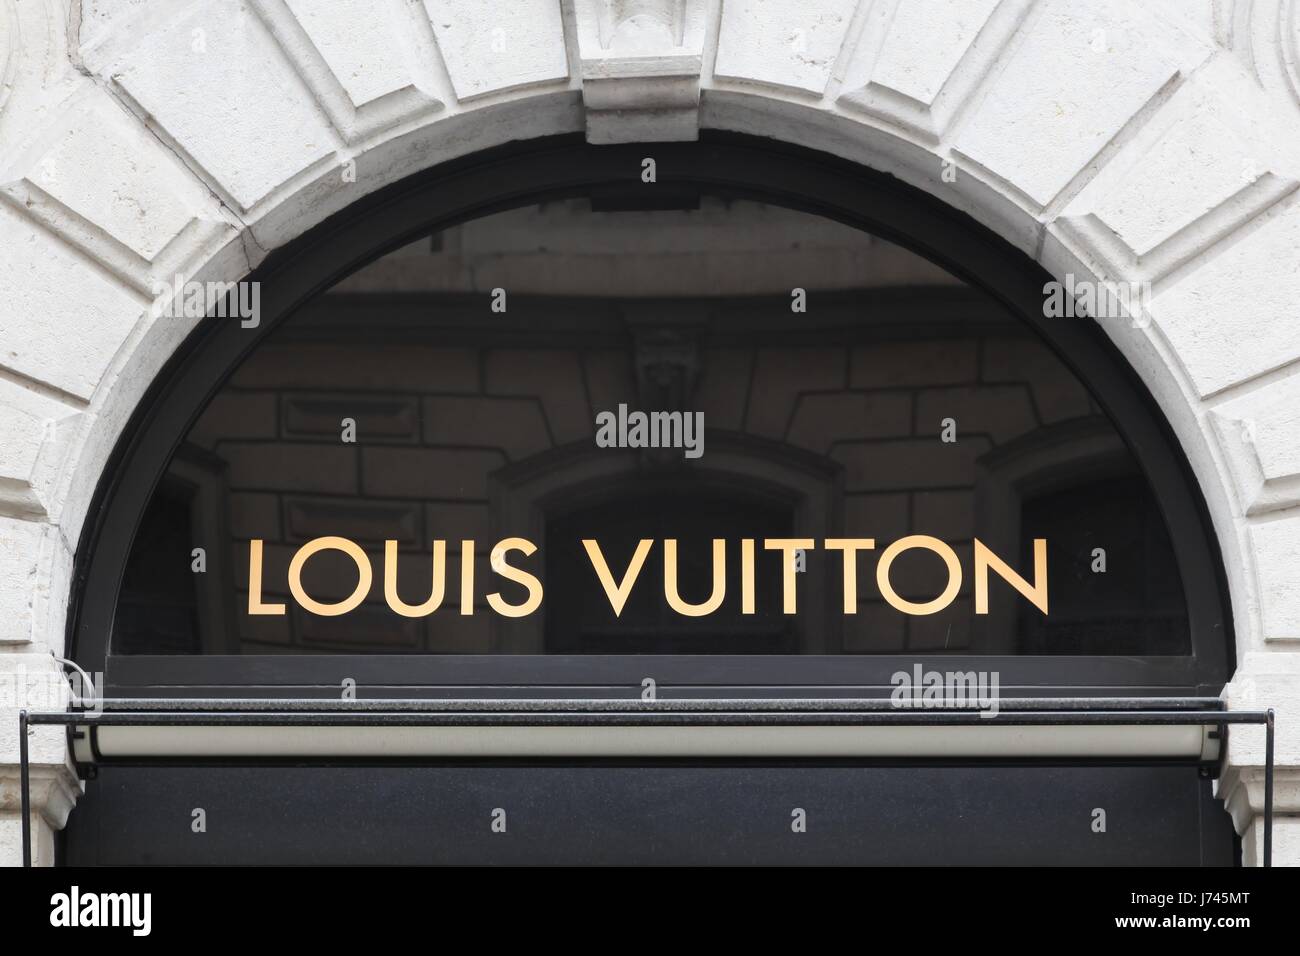 Lyon, Frankreich - 26. Februar 2017: Louis Vuitton Zeichen an der Wand. Louis Vuitton ist ein französisches Unternehmen spezialisiert auf Mode-Accessoires Stockfoto